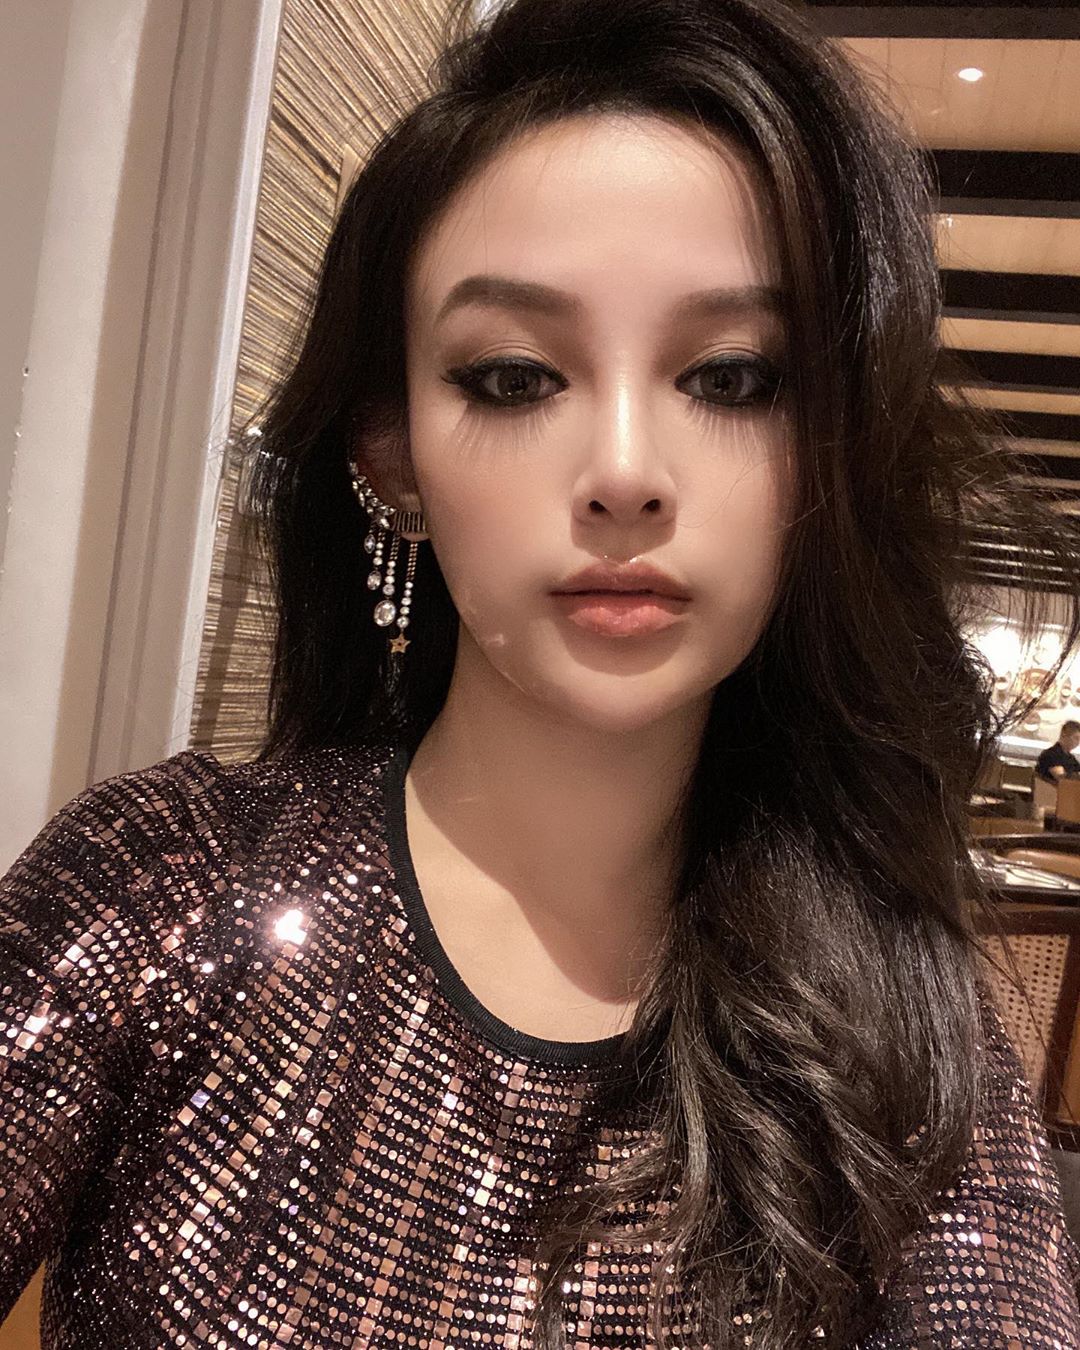 Nữ diễn viên nổi tiếng Thái Lan bóc phốt Huyền Baby tận 2 lần vì sử dụng hình ảnh trái phép, khẳng định sẽ nhờ pháp luật xử lý-1